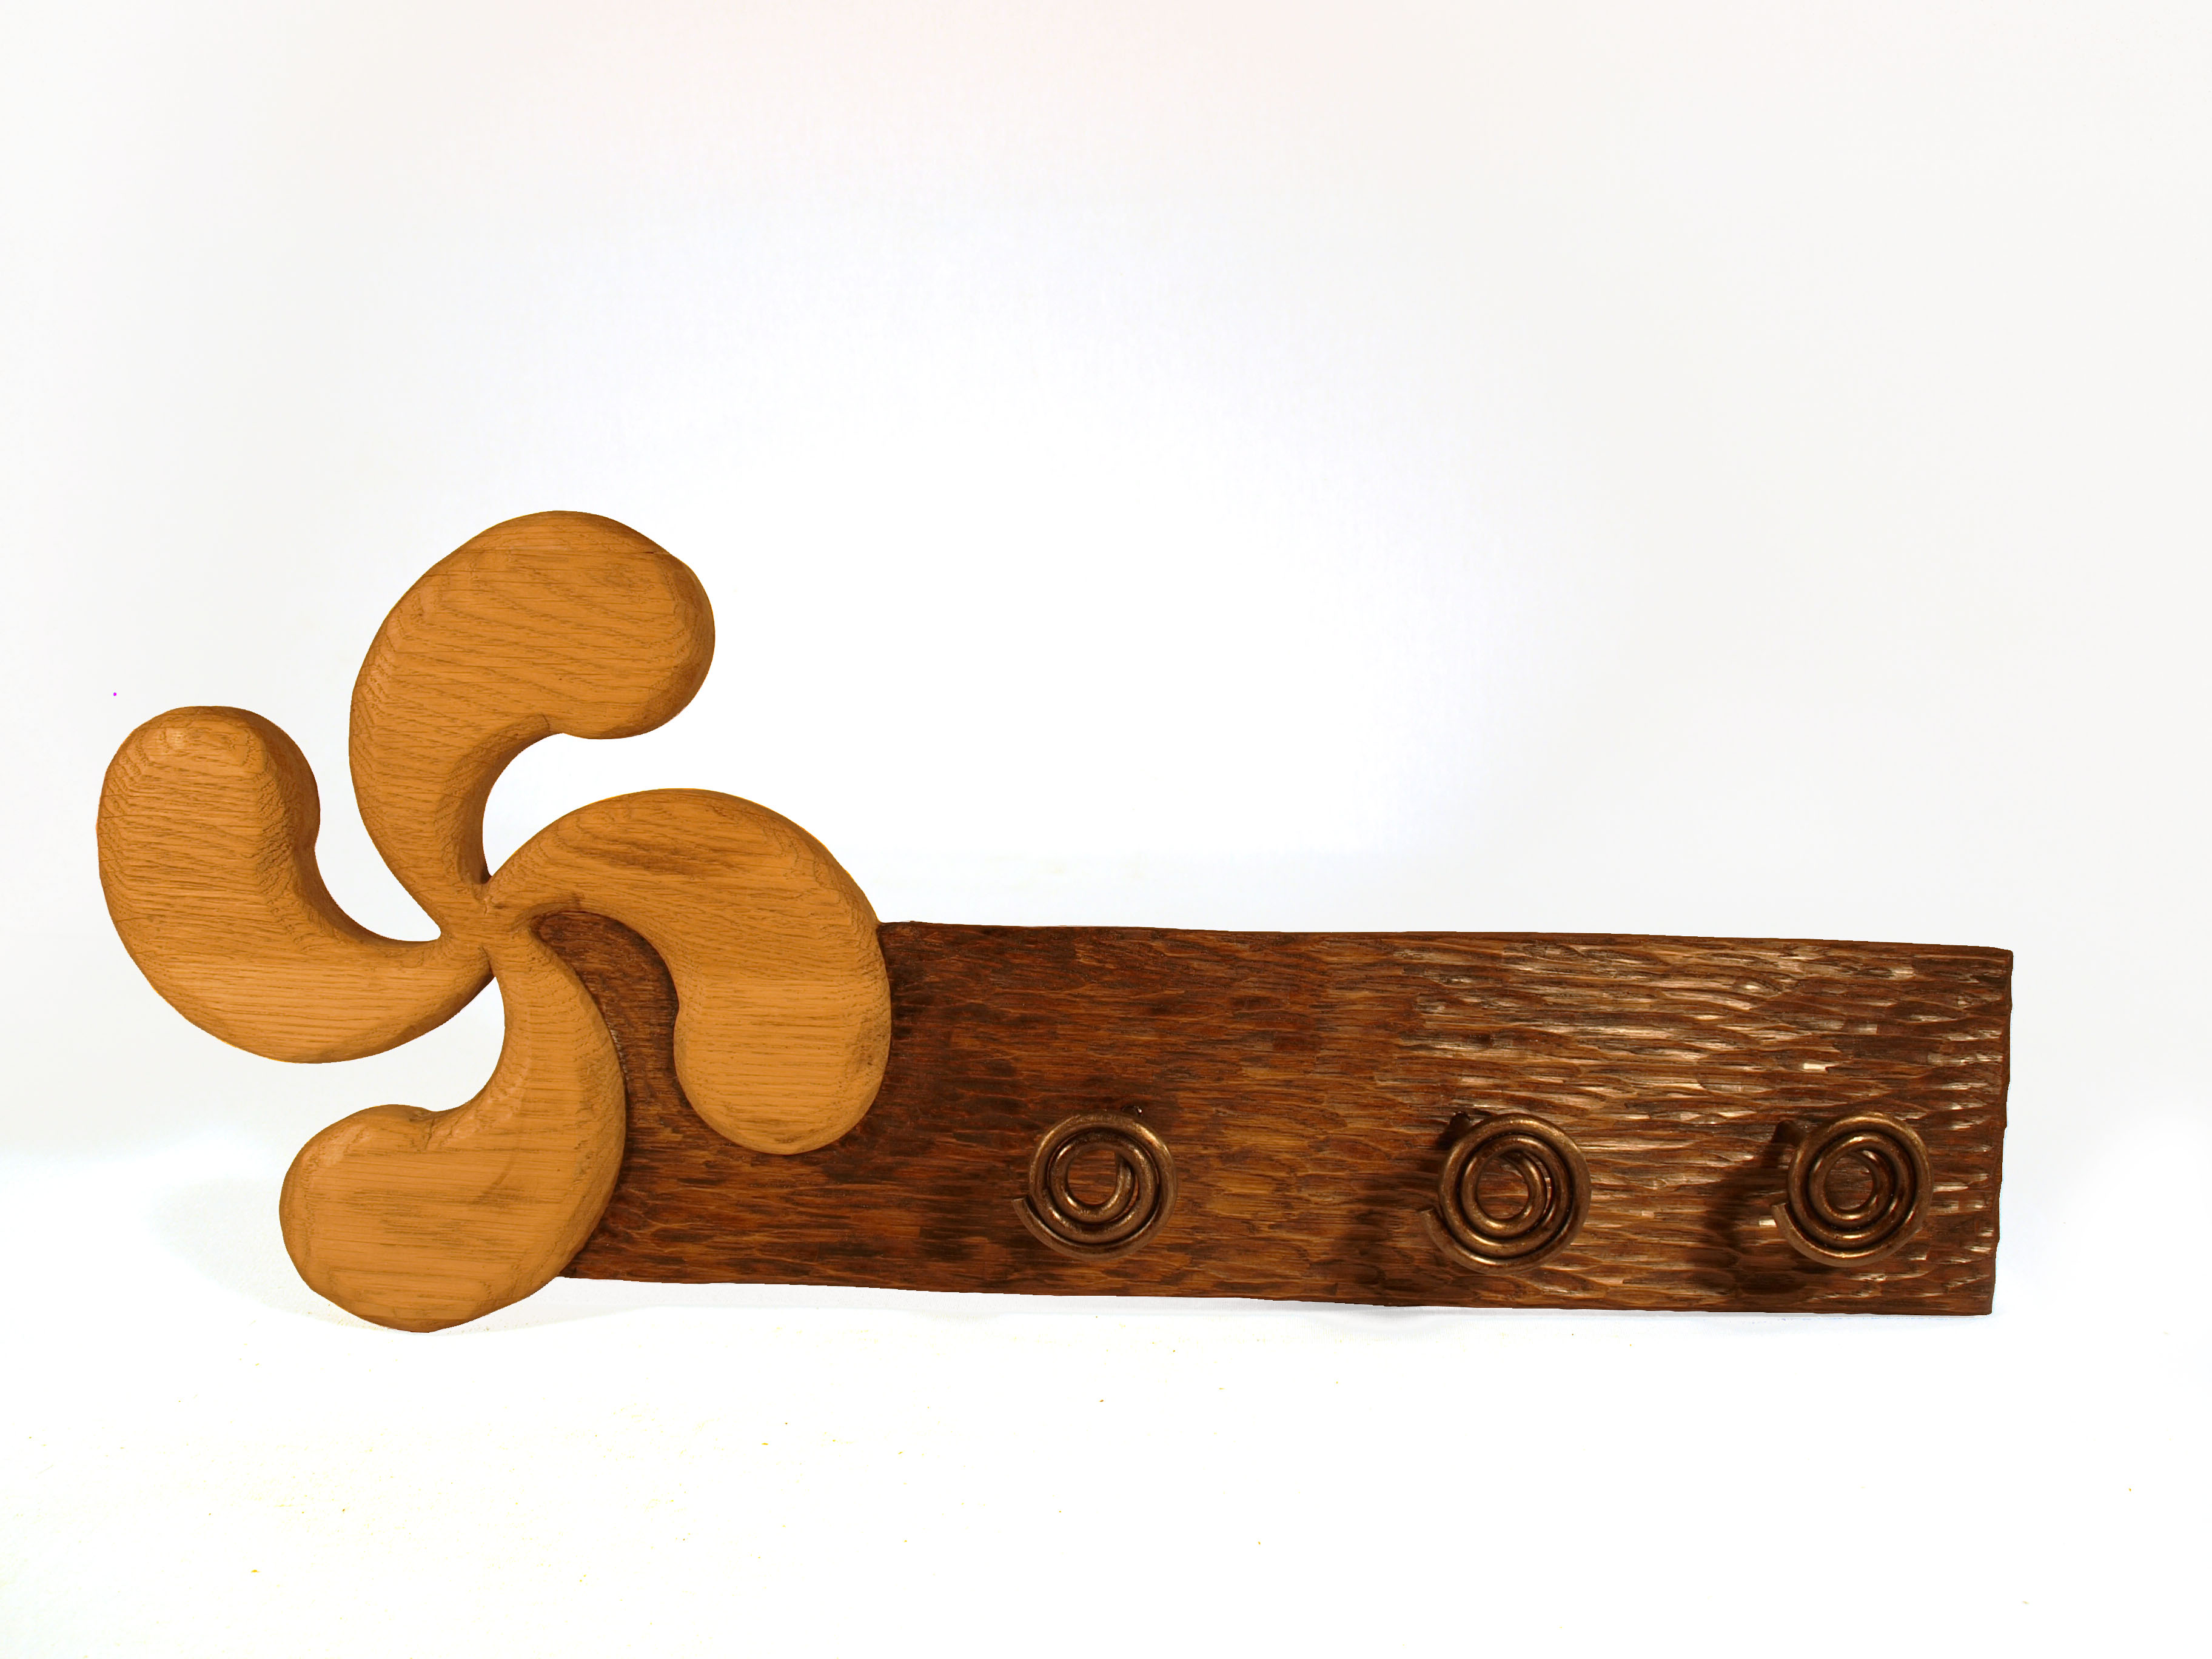 Perchero con lauburu tallado en madera de roble en altorrelieve